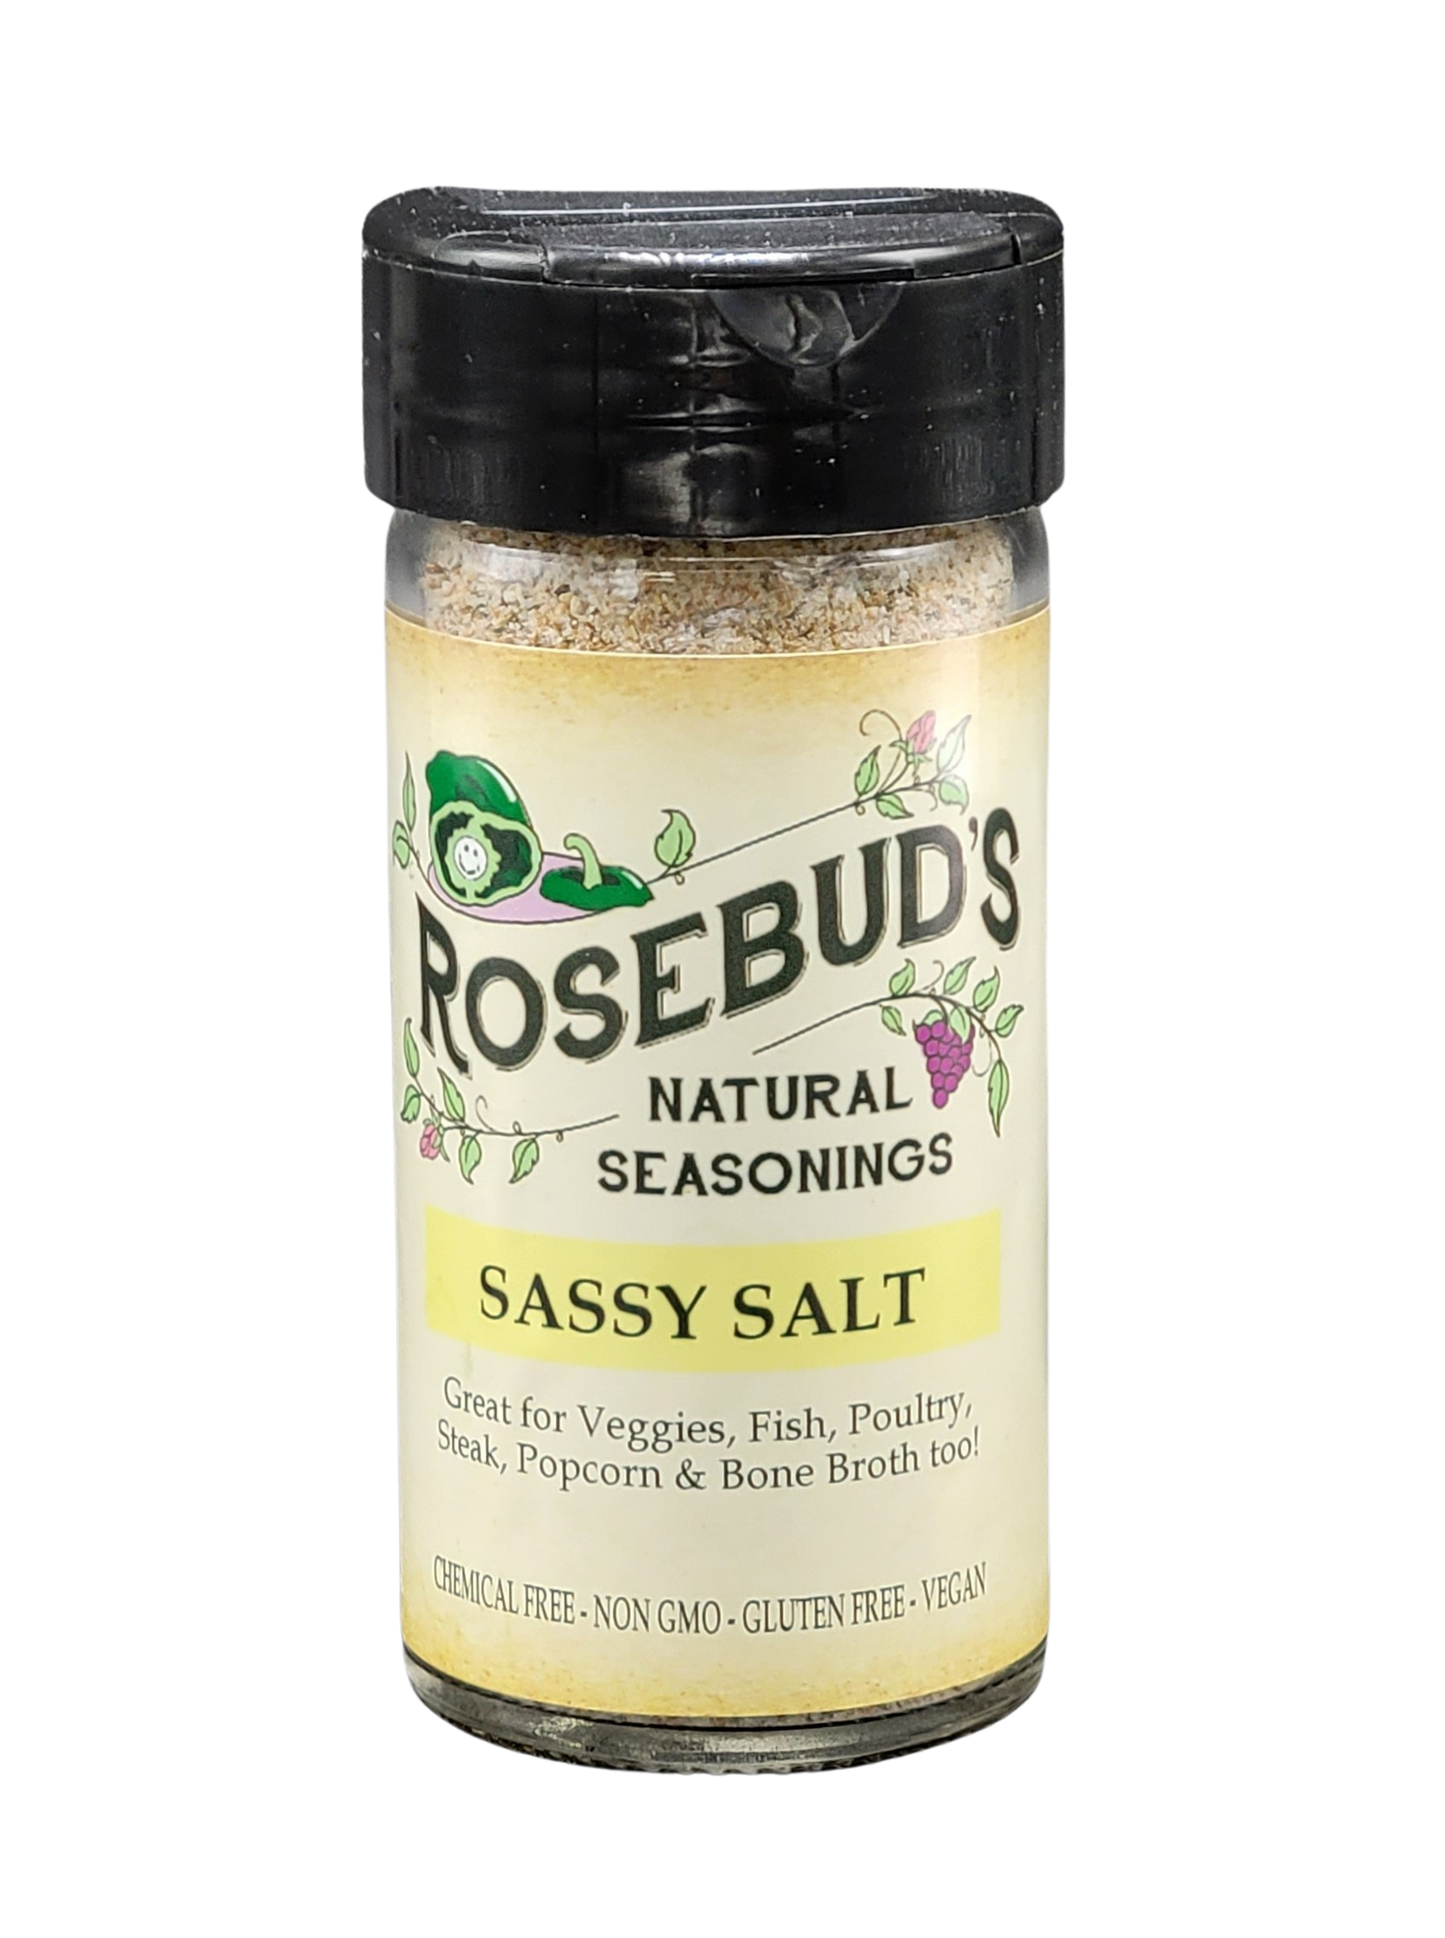 SASSY SALT